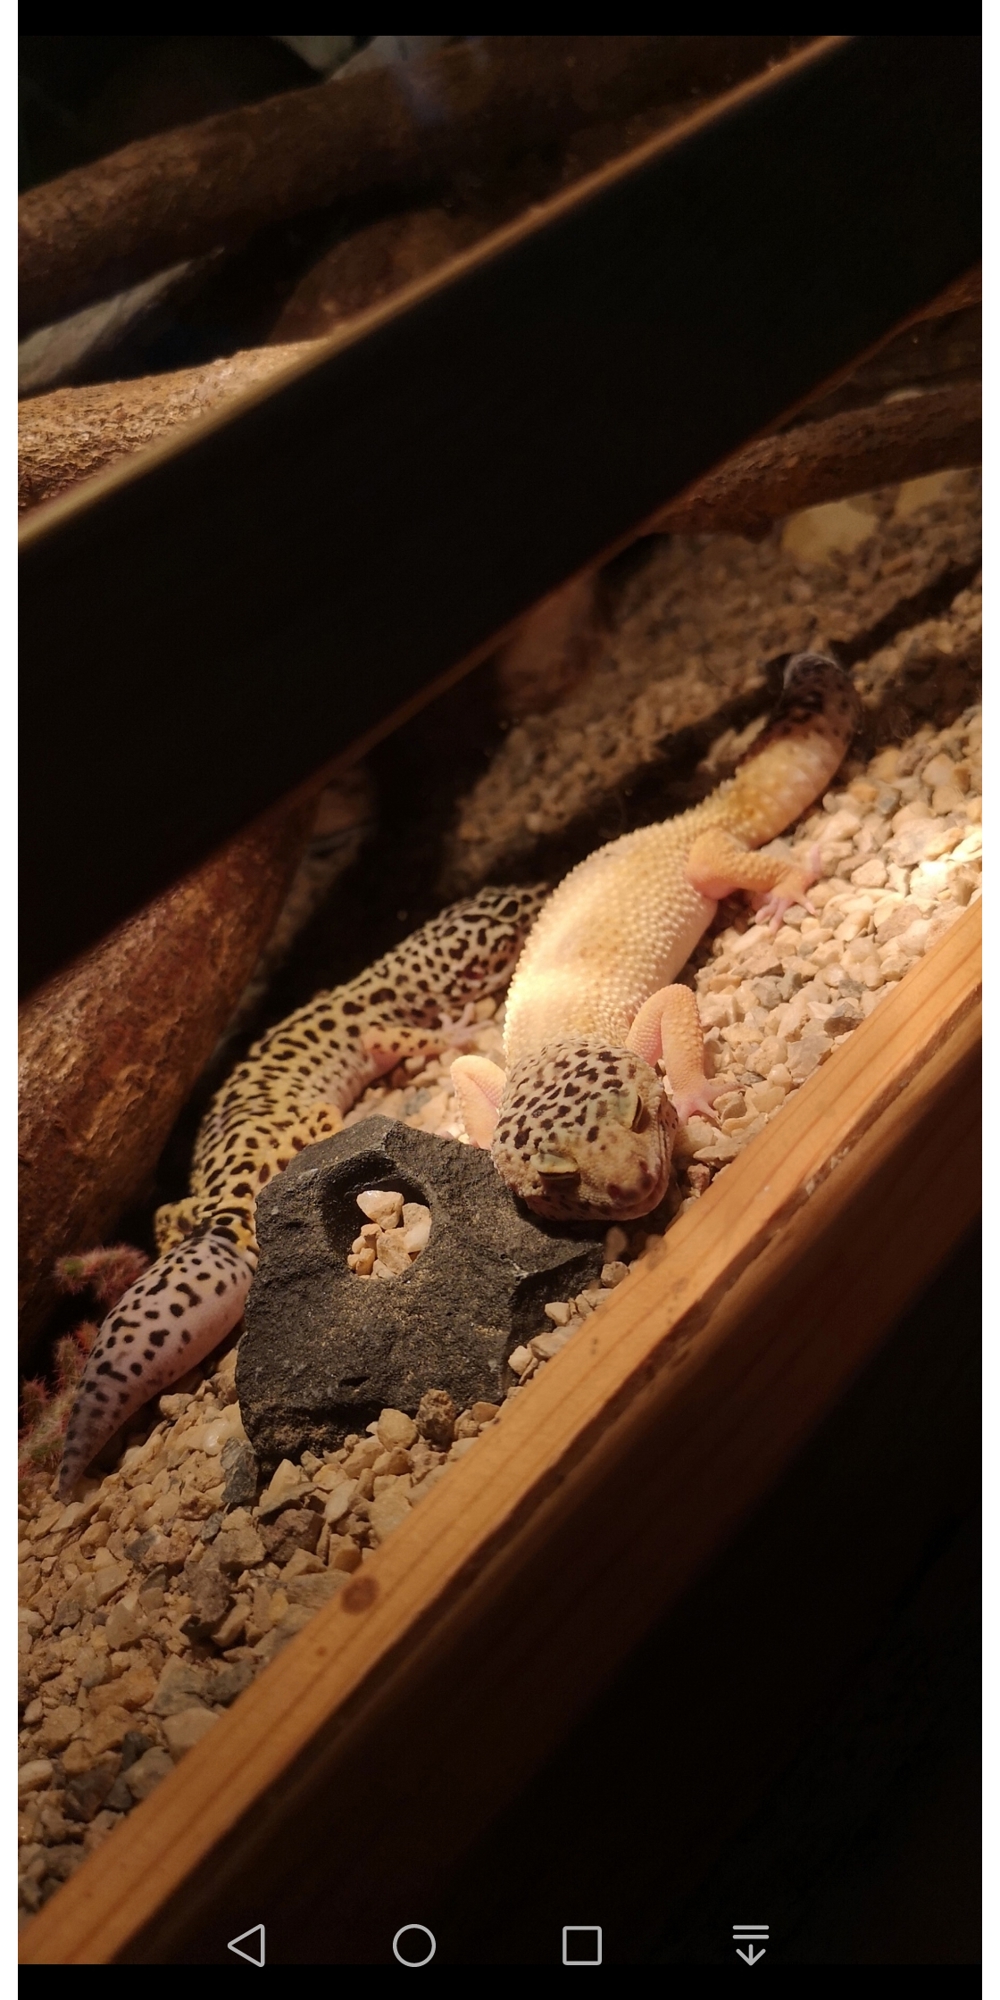 Leopardgecko, Leo, weibchen